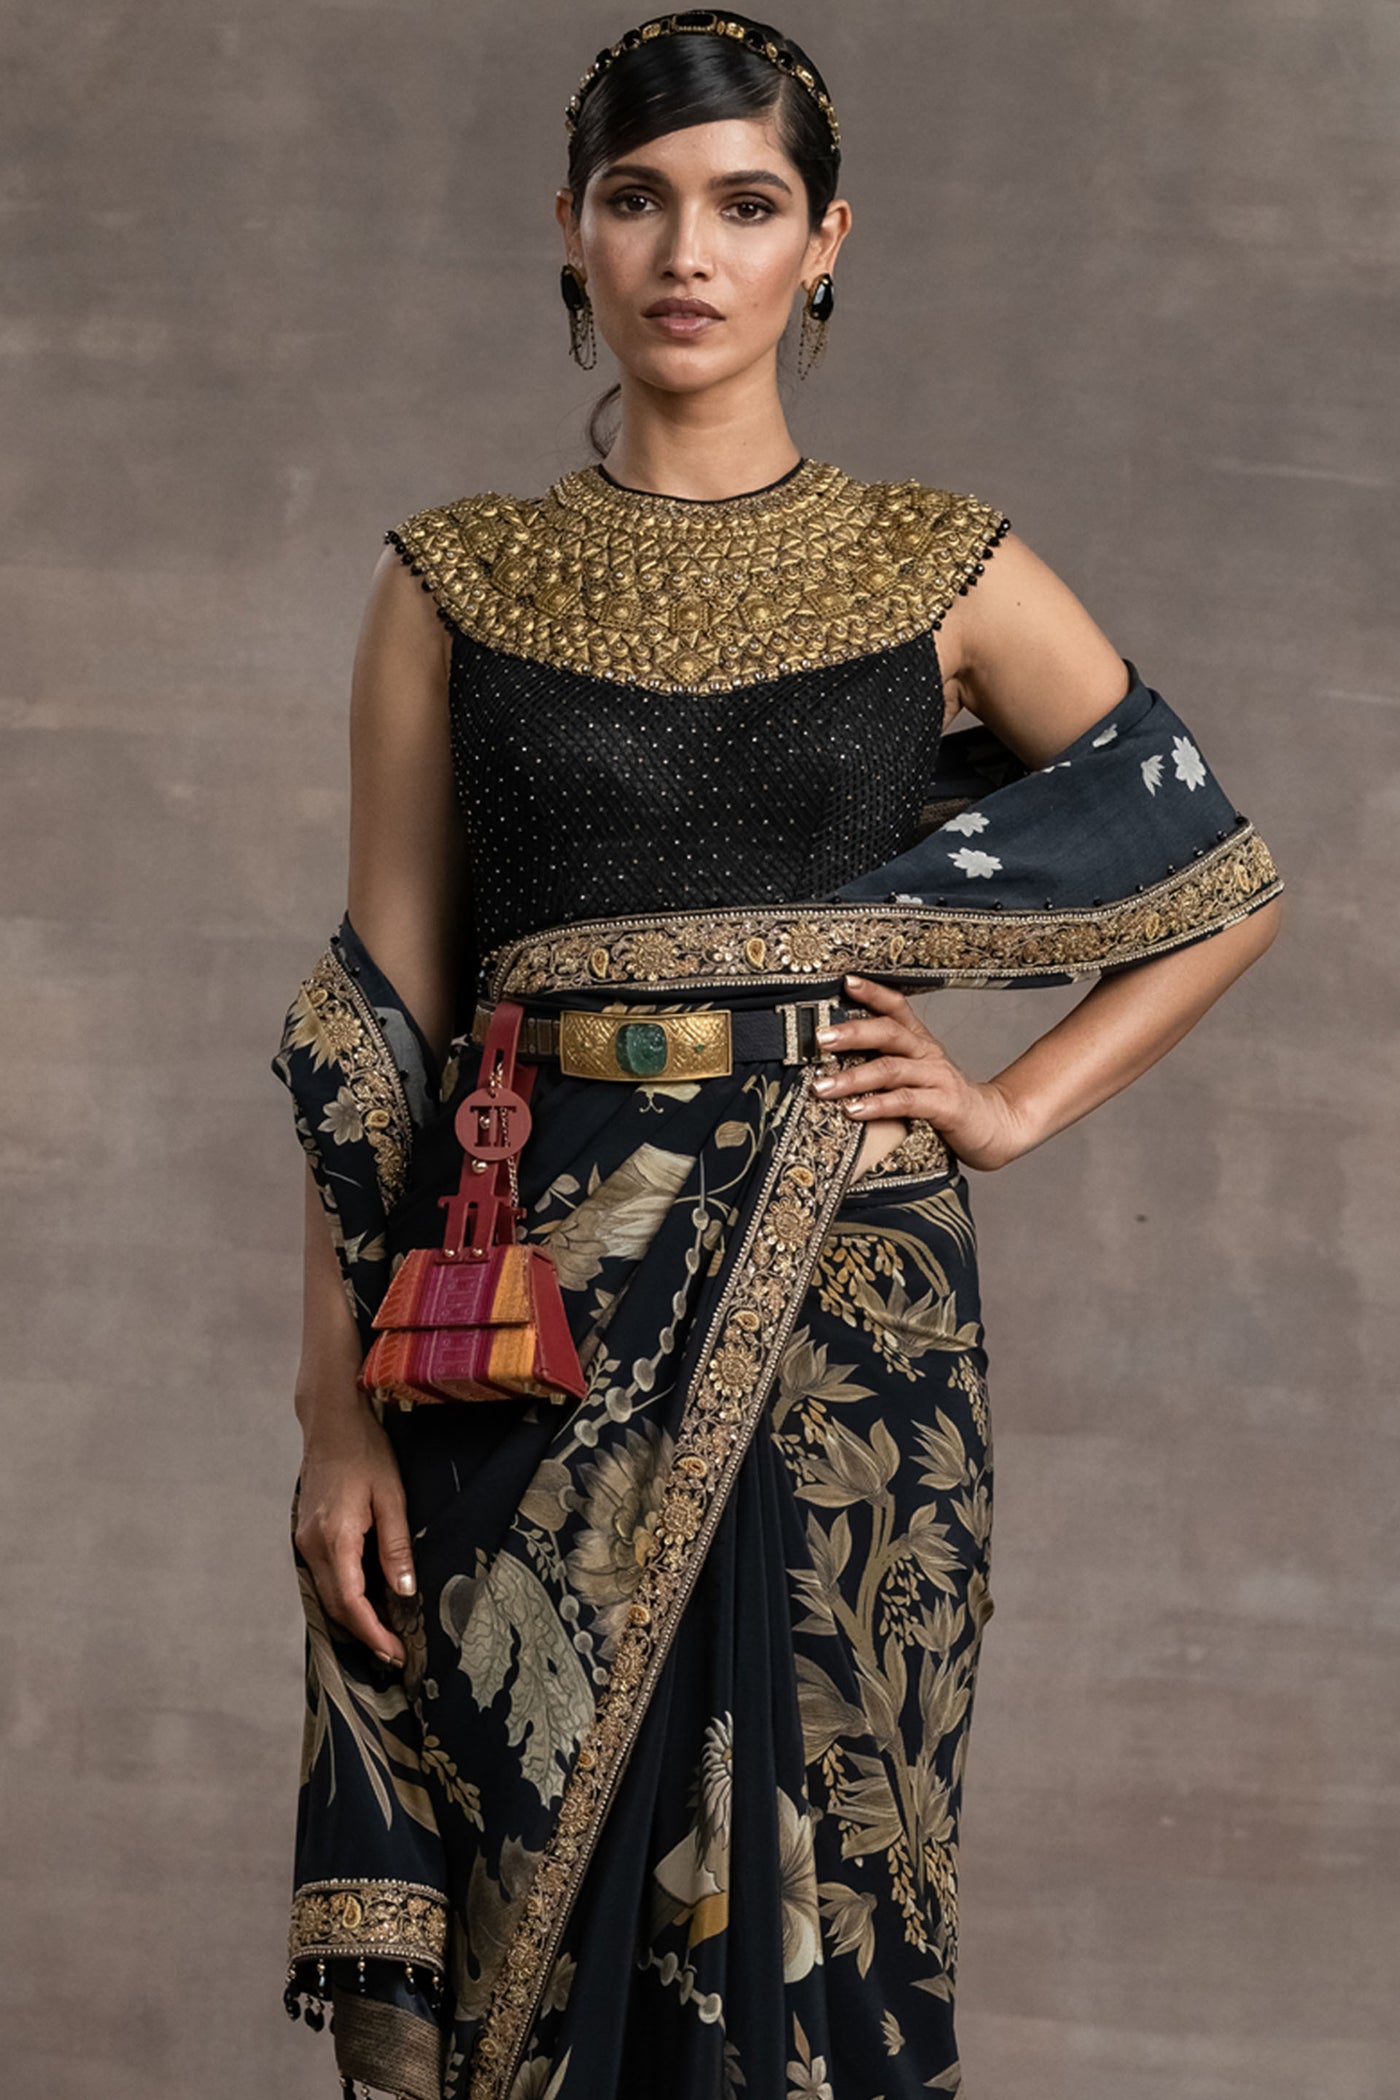 Tarun tahiliani Printed Saree With Embroidered Blouse black indian designer wear bridal wedding online shopping melange singapore